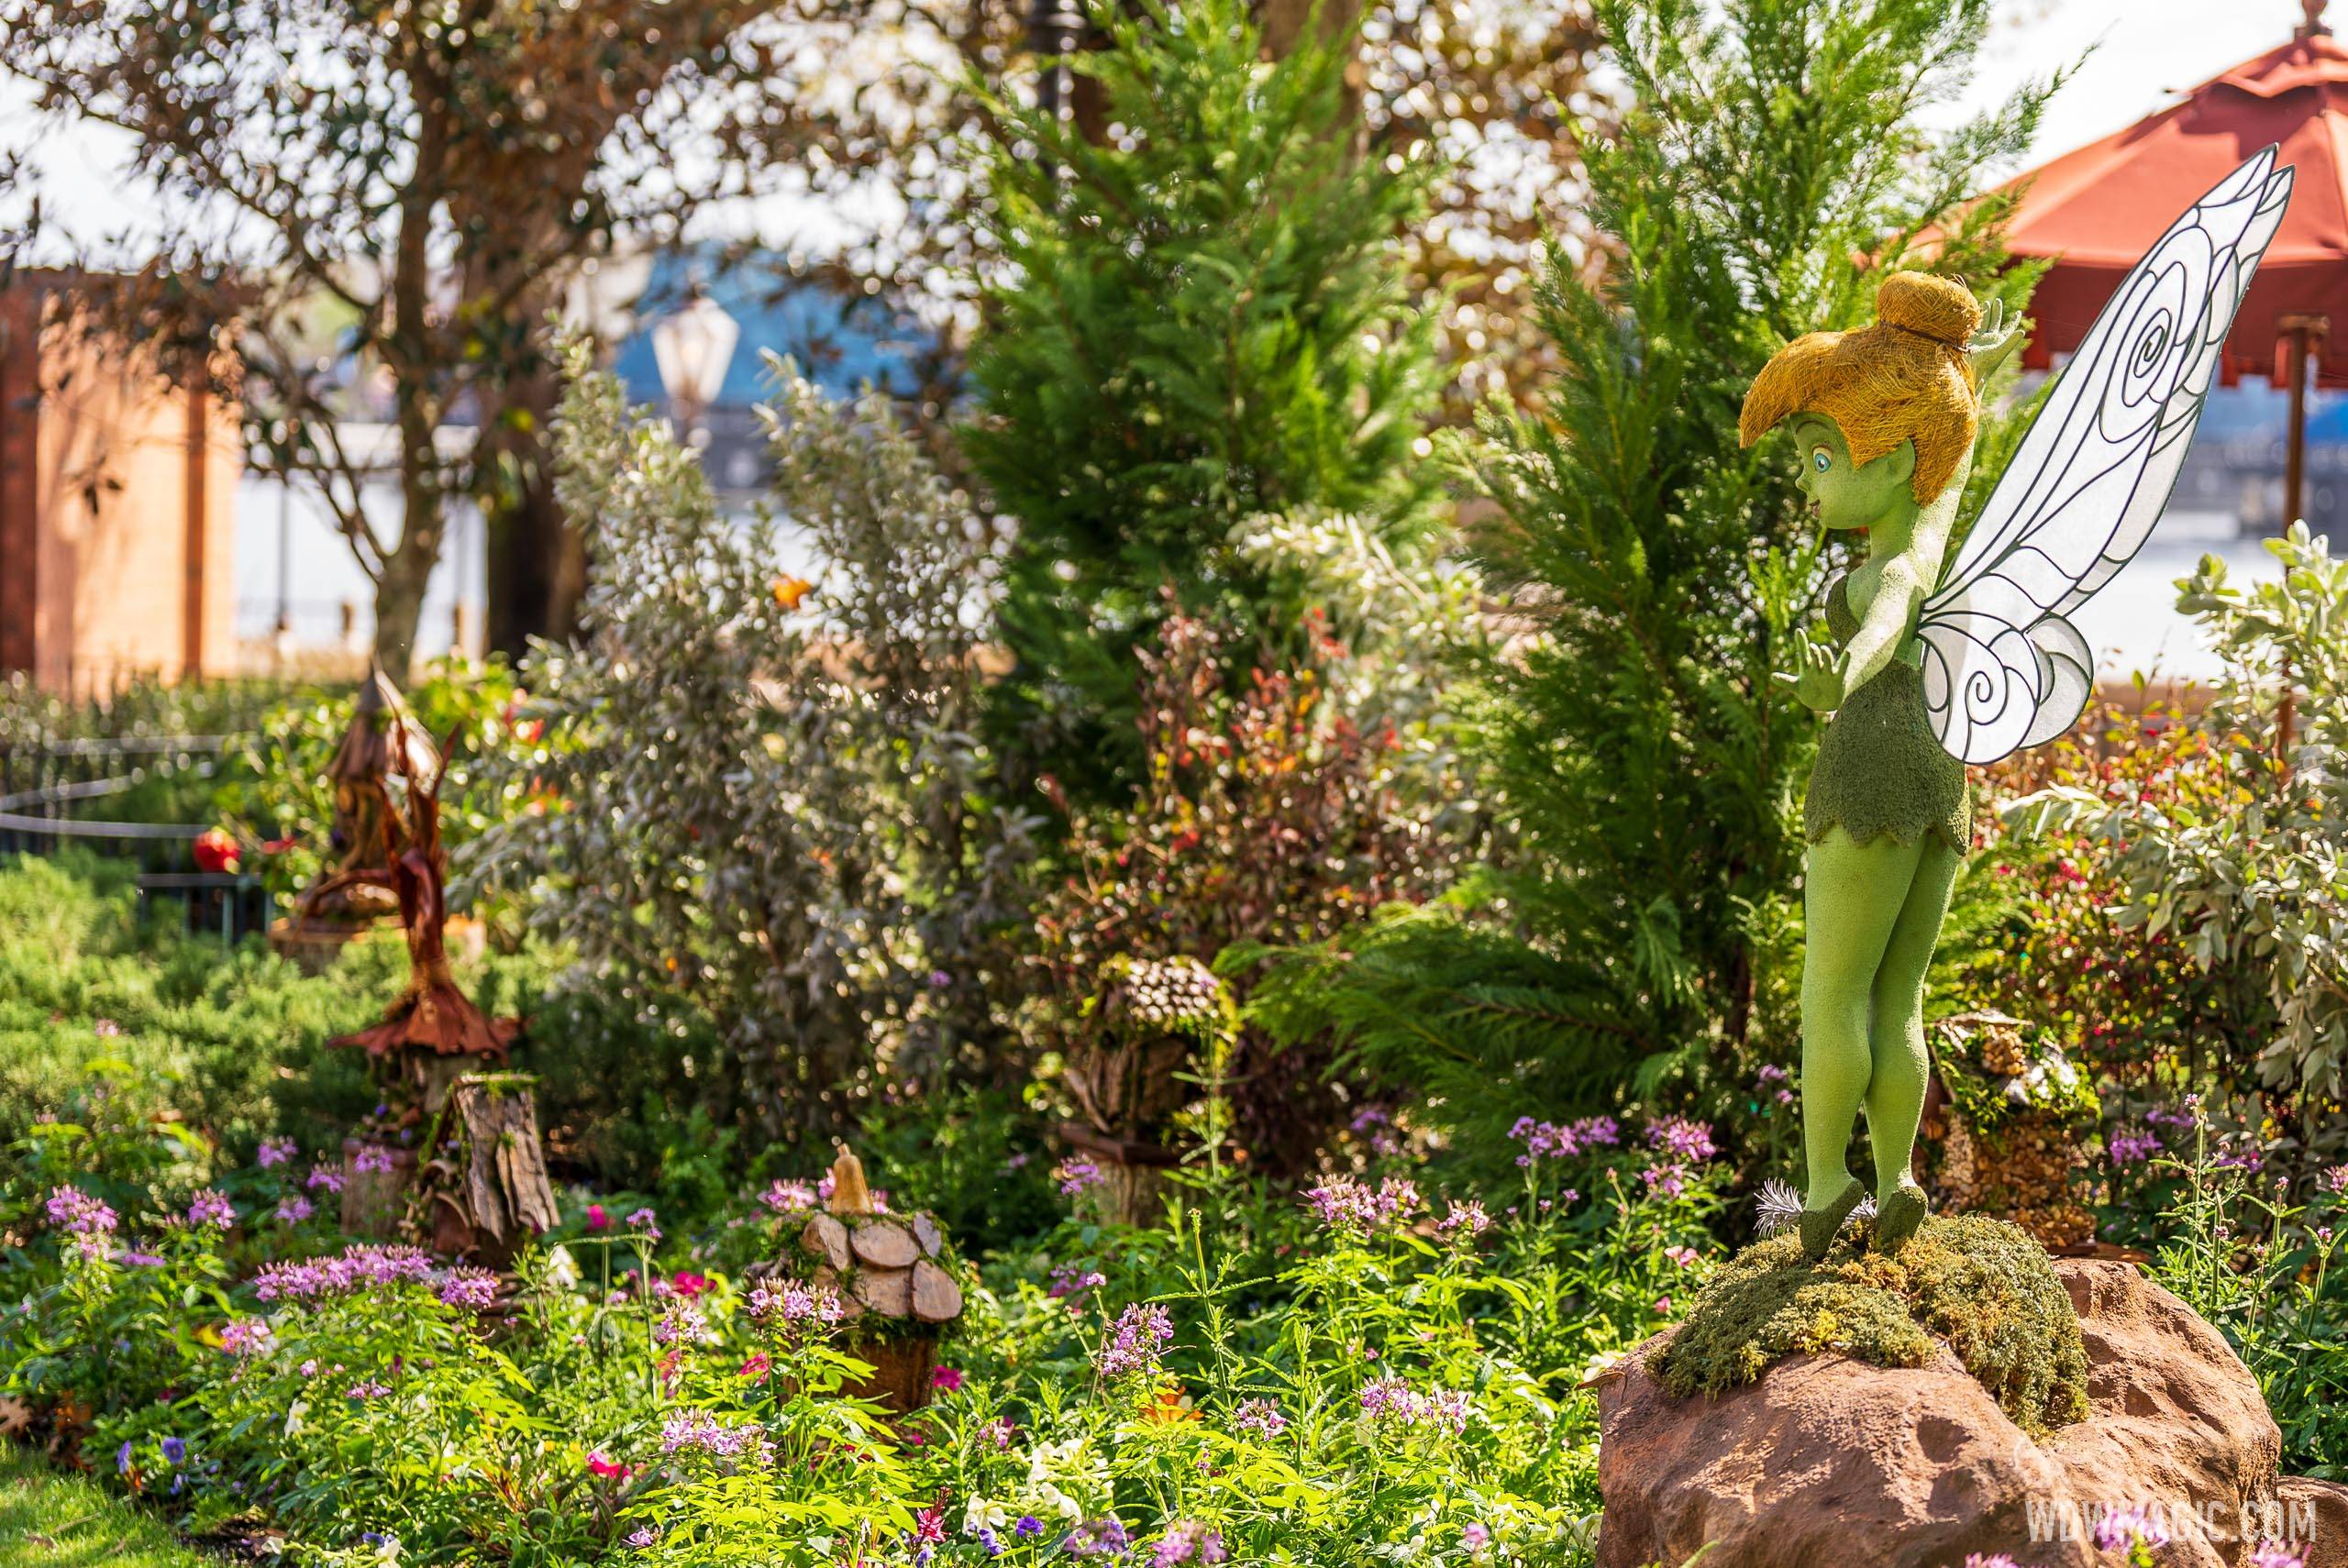 Tinker Bell’s Fairy House Garden – United Kingdom Pavilion